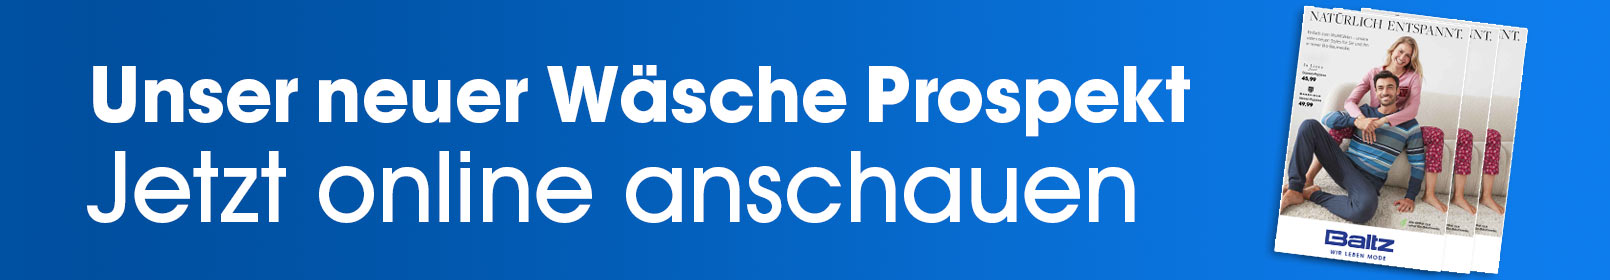 waesche-prospekt-banner